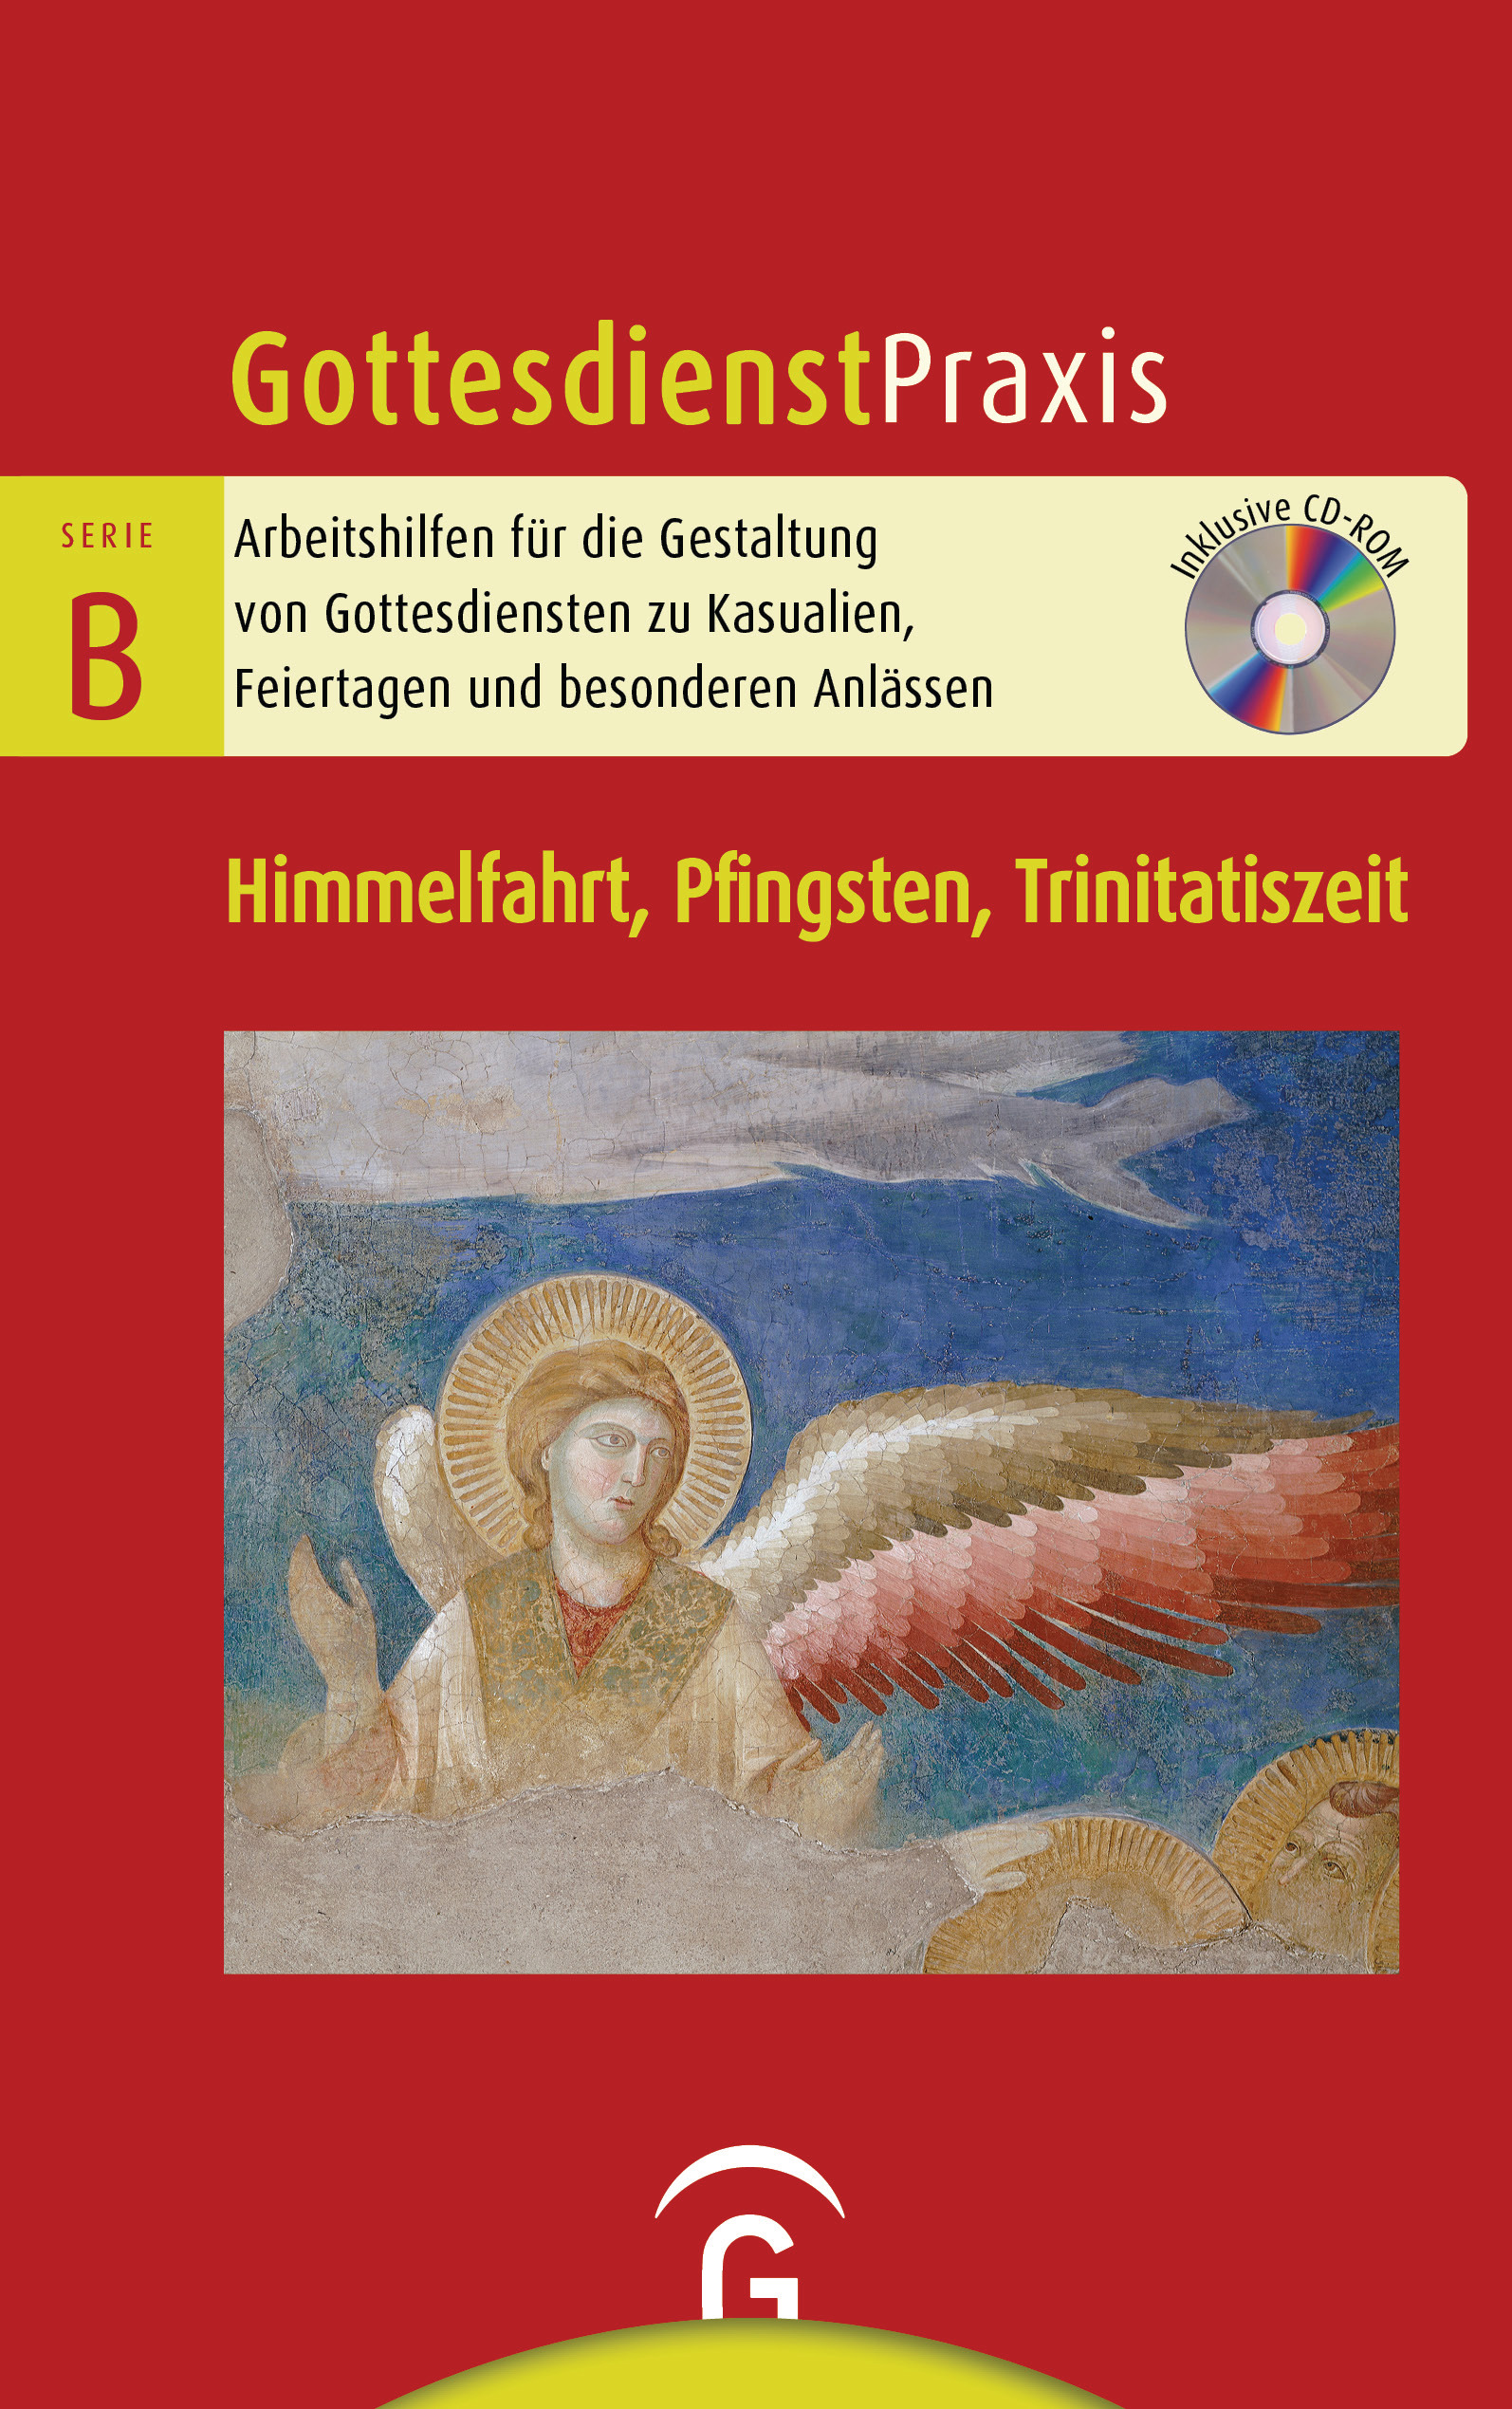 Gottesdienstpraxis Serie B Himmelfahrt, Pfingsten, Trinitatiszeit - Cover